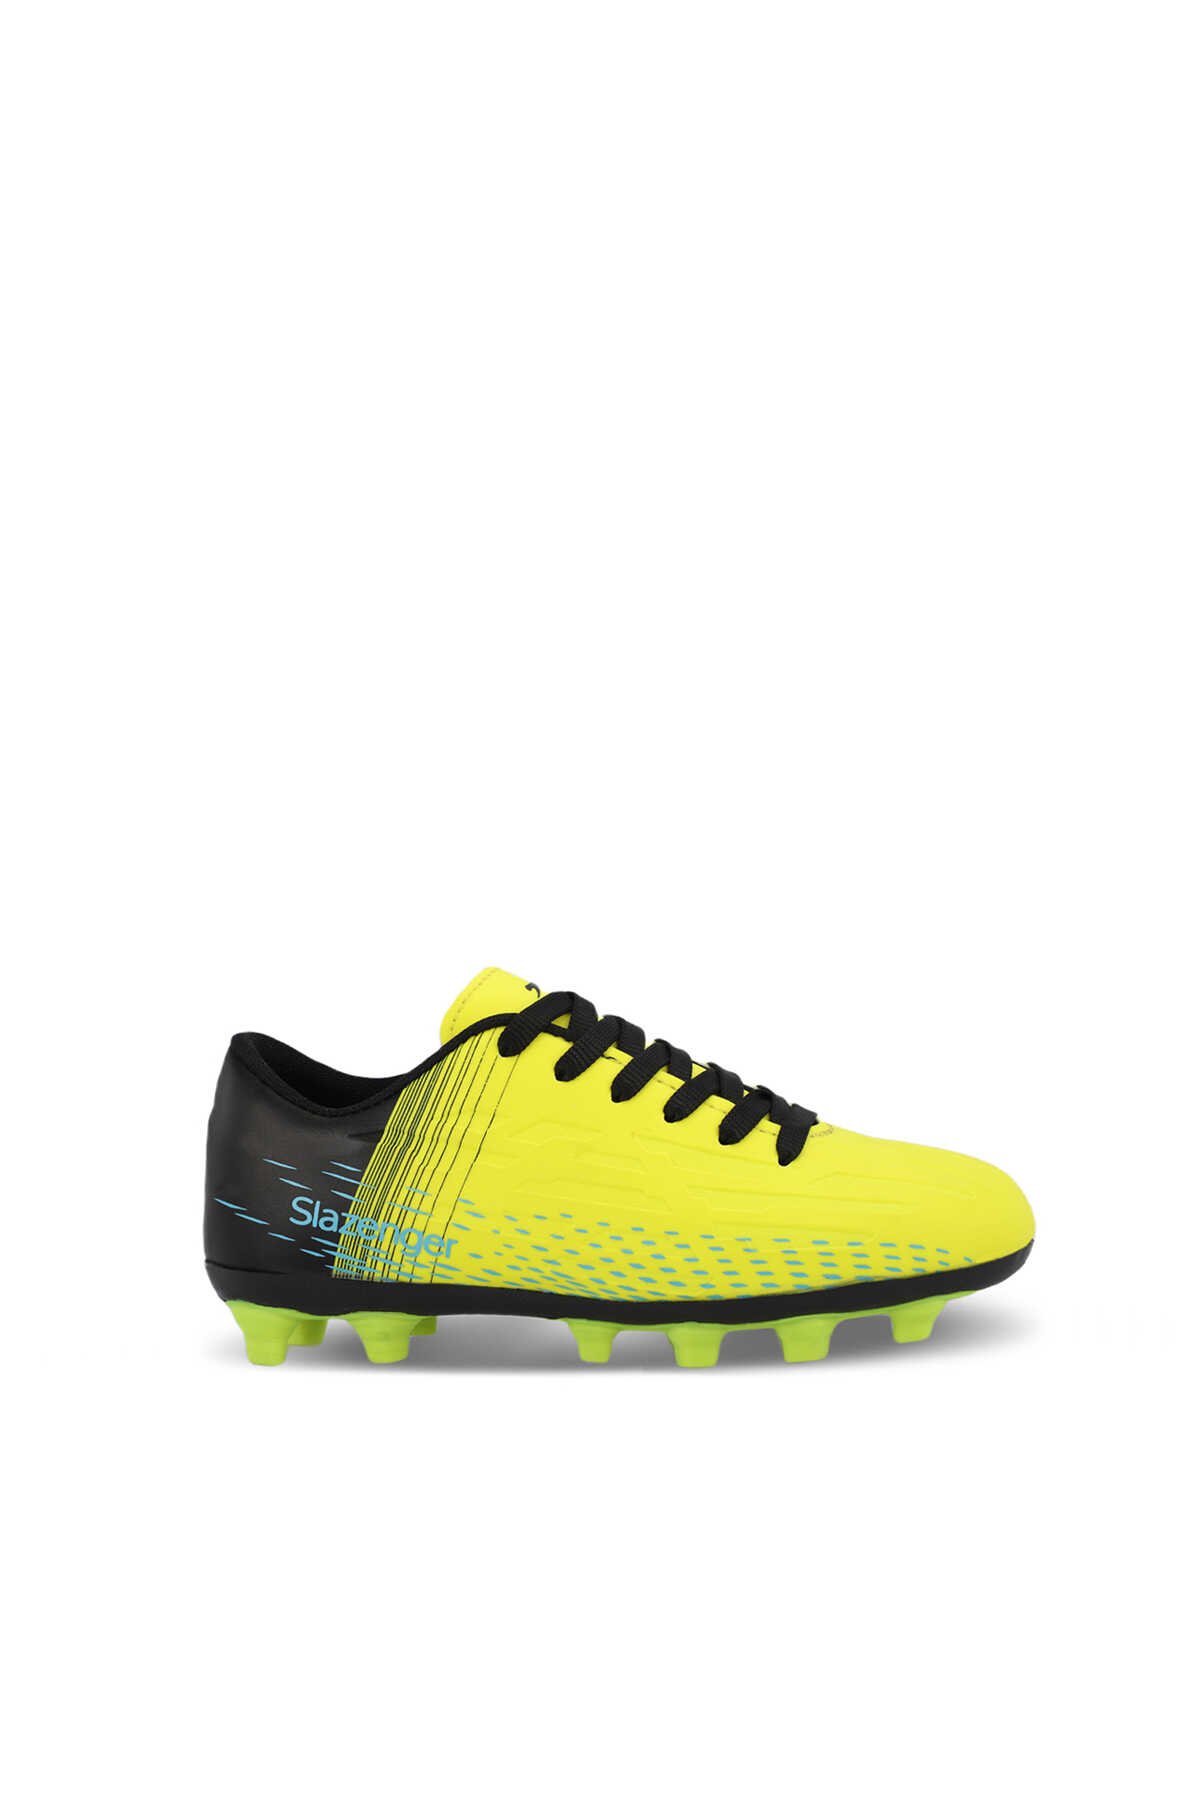 Slazenger - Slazenger SCORE I KRP Futbol Erkek Çocuk Krampon Ayakkabı Neon Sarı / Siyah